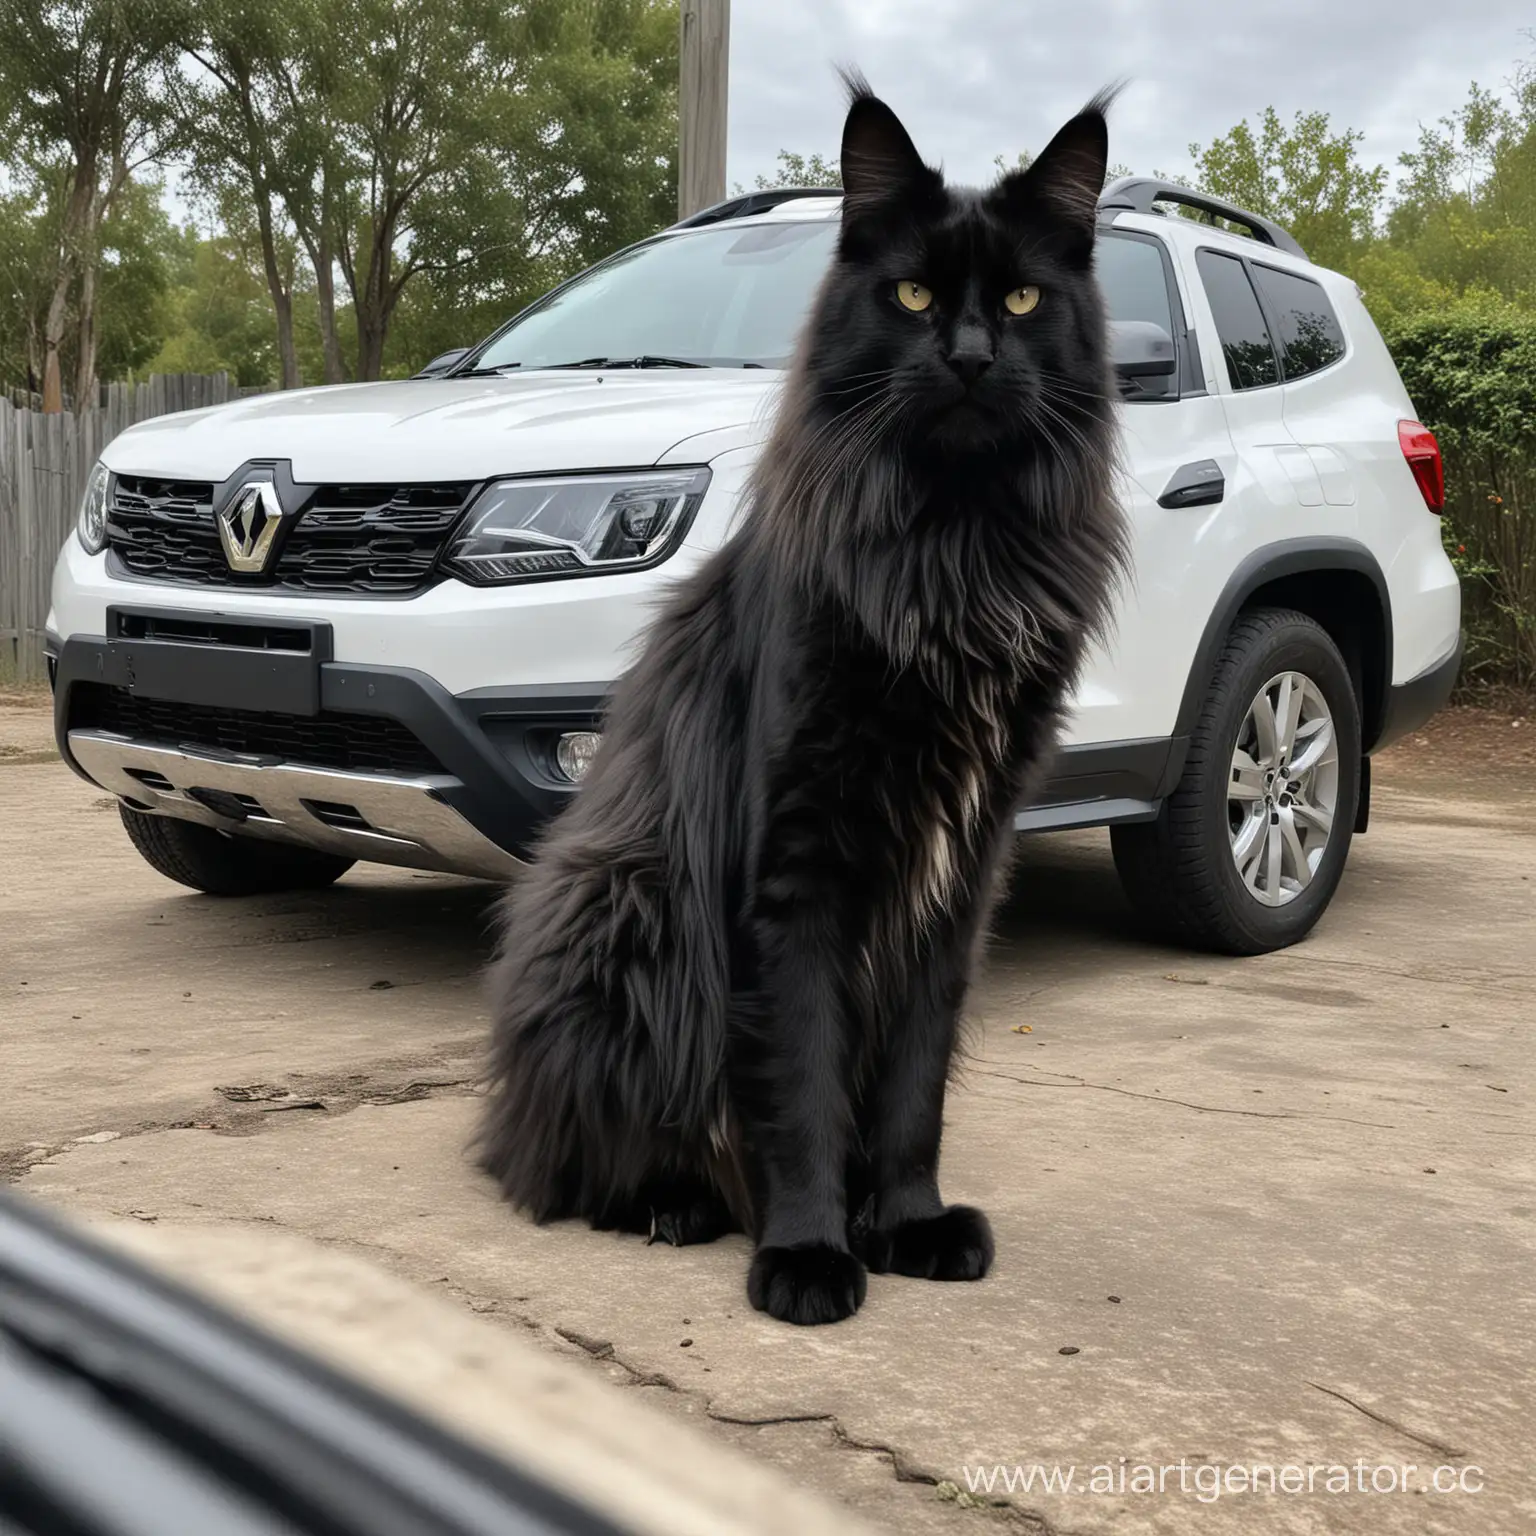 Огромный черный кот породы мэйн-кун сидит рядом с белым Renault Duster. Кот настолько огромный, что машина рядом с ним кажется игрушечной. У кота очень глупая, но гордая морда.